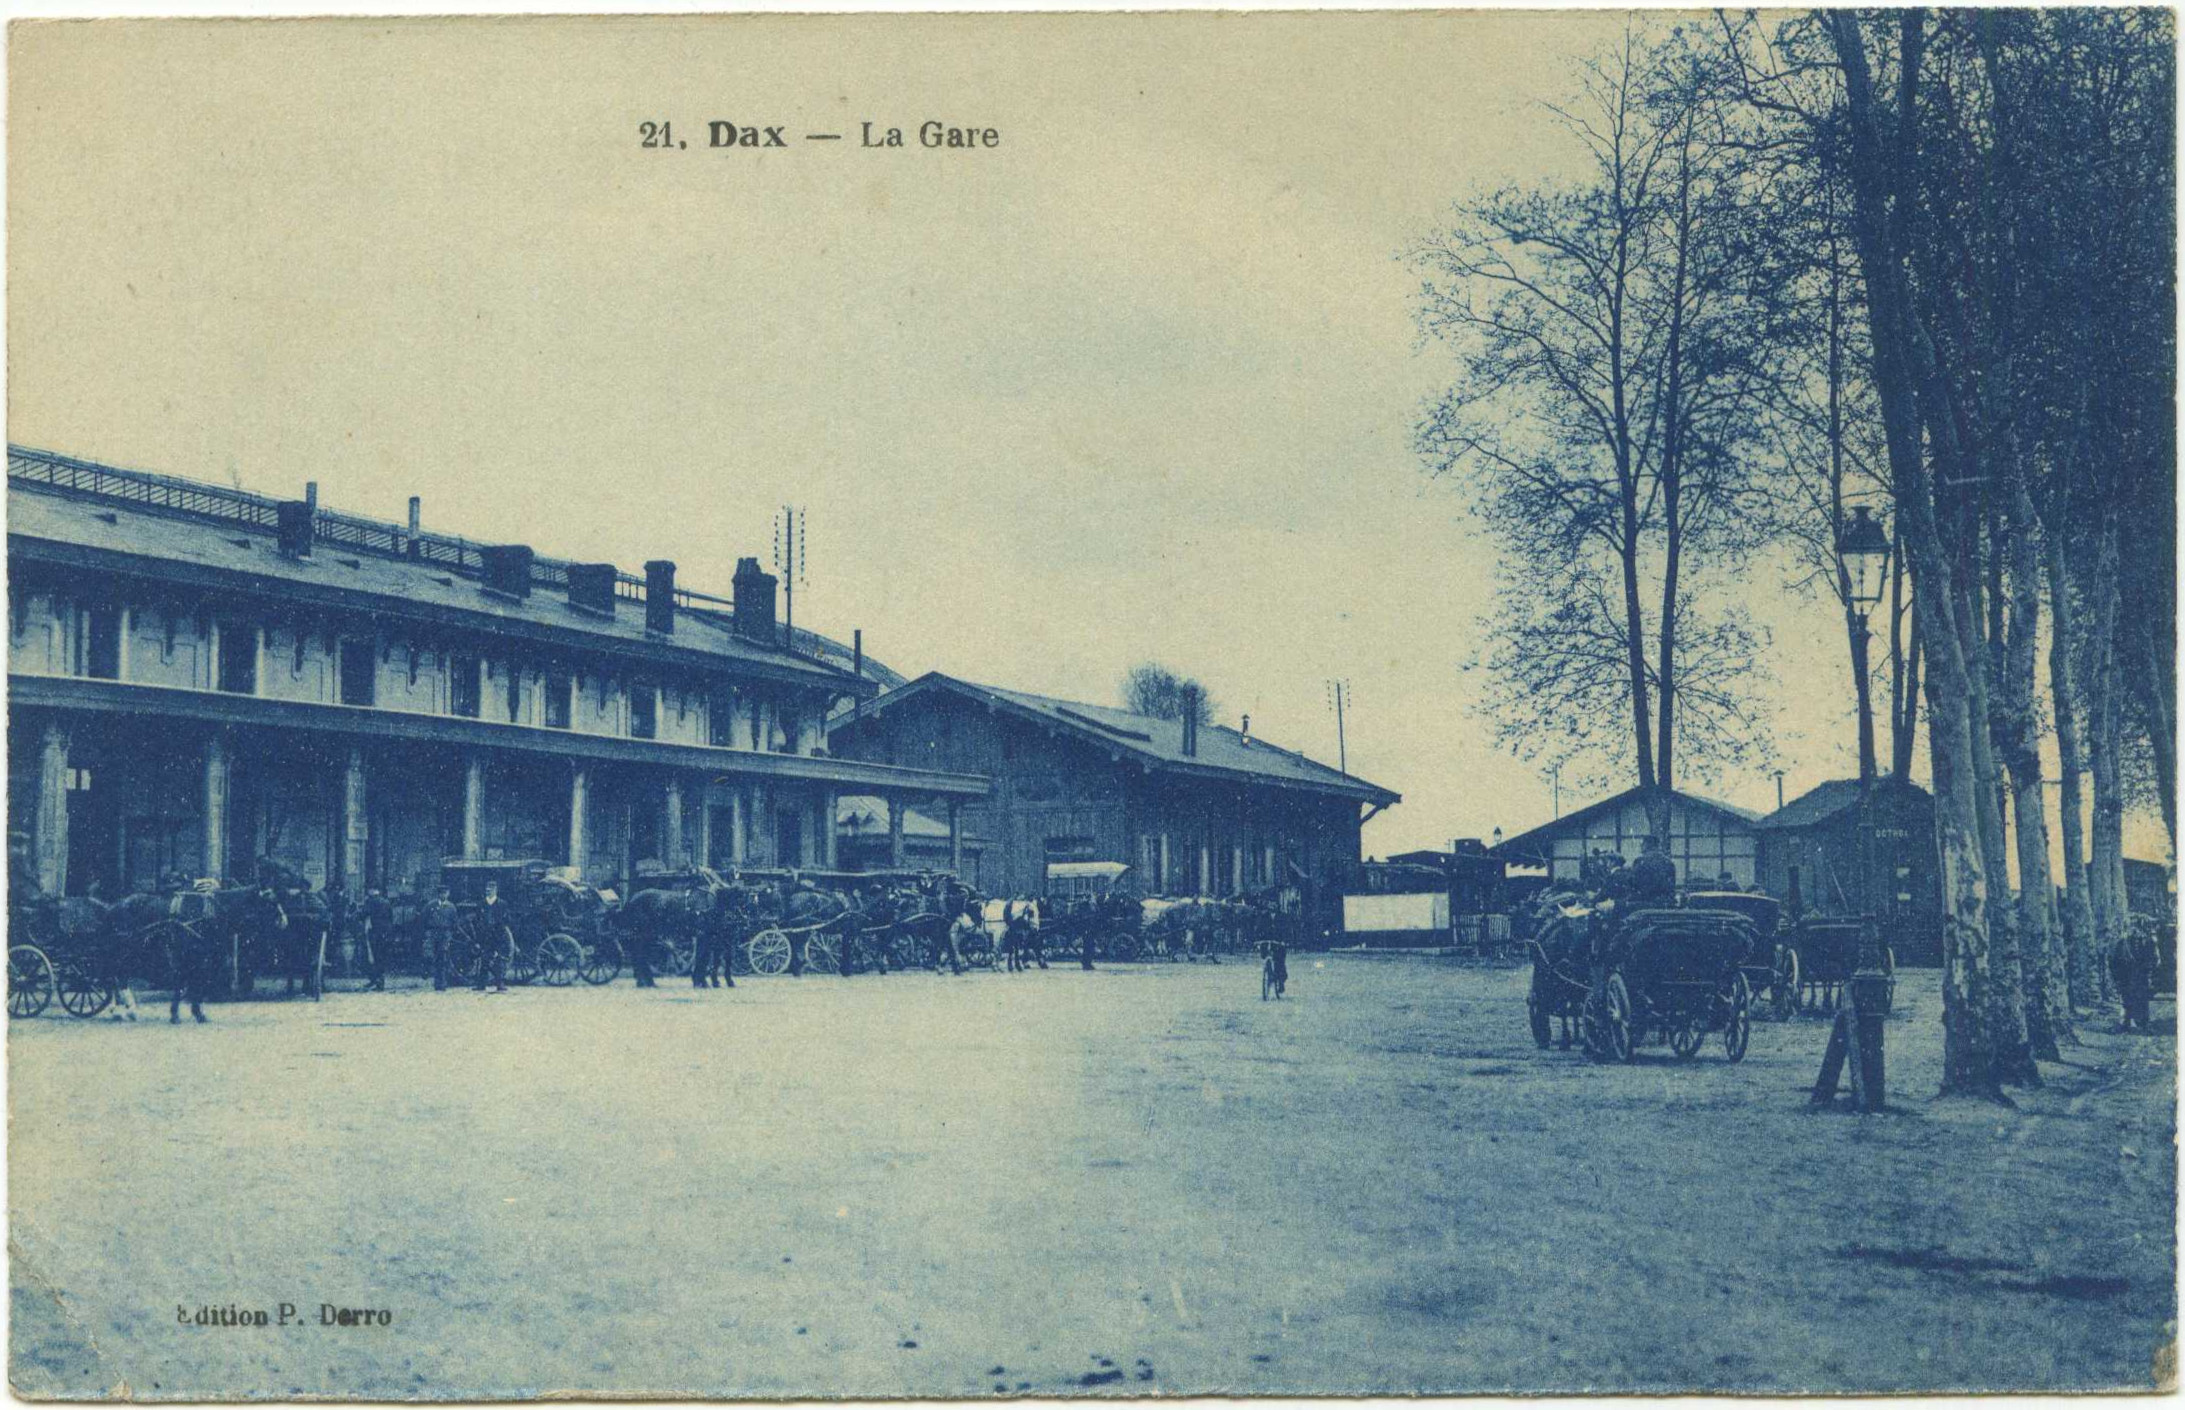 Dax - La Gare